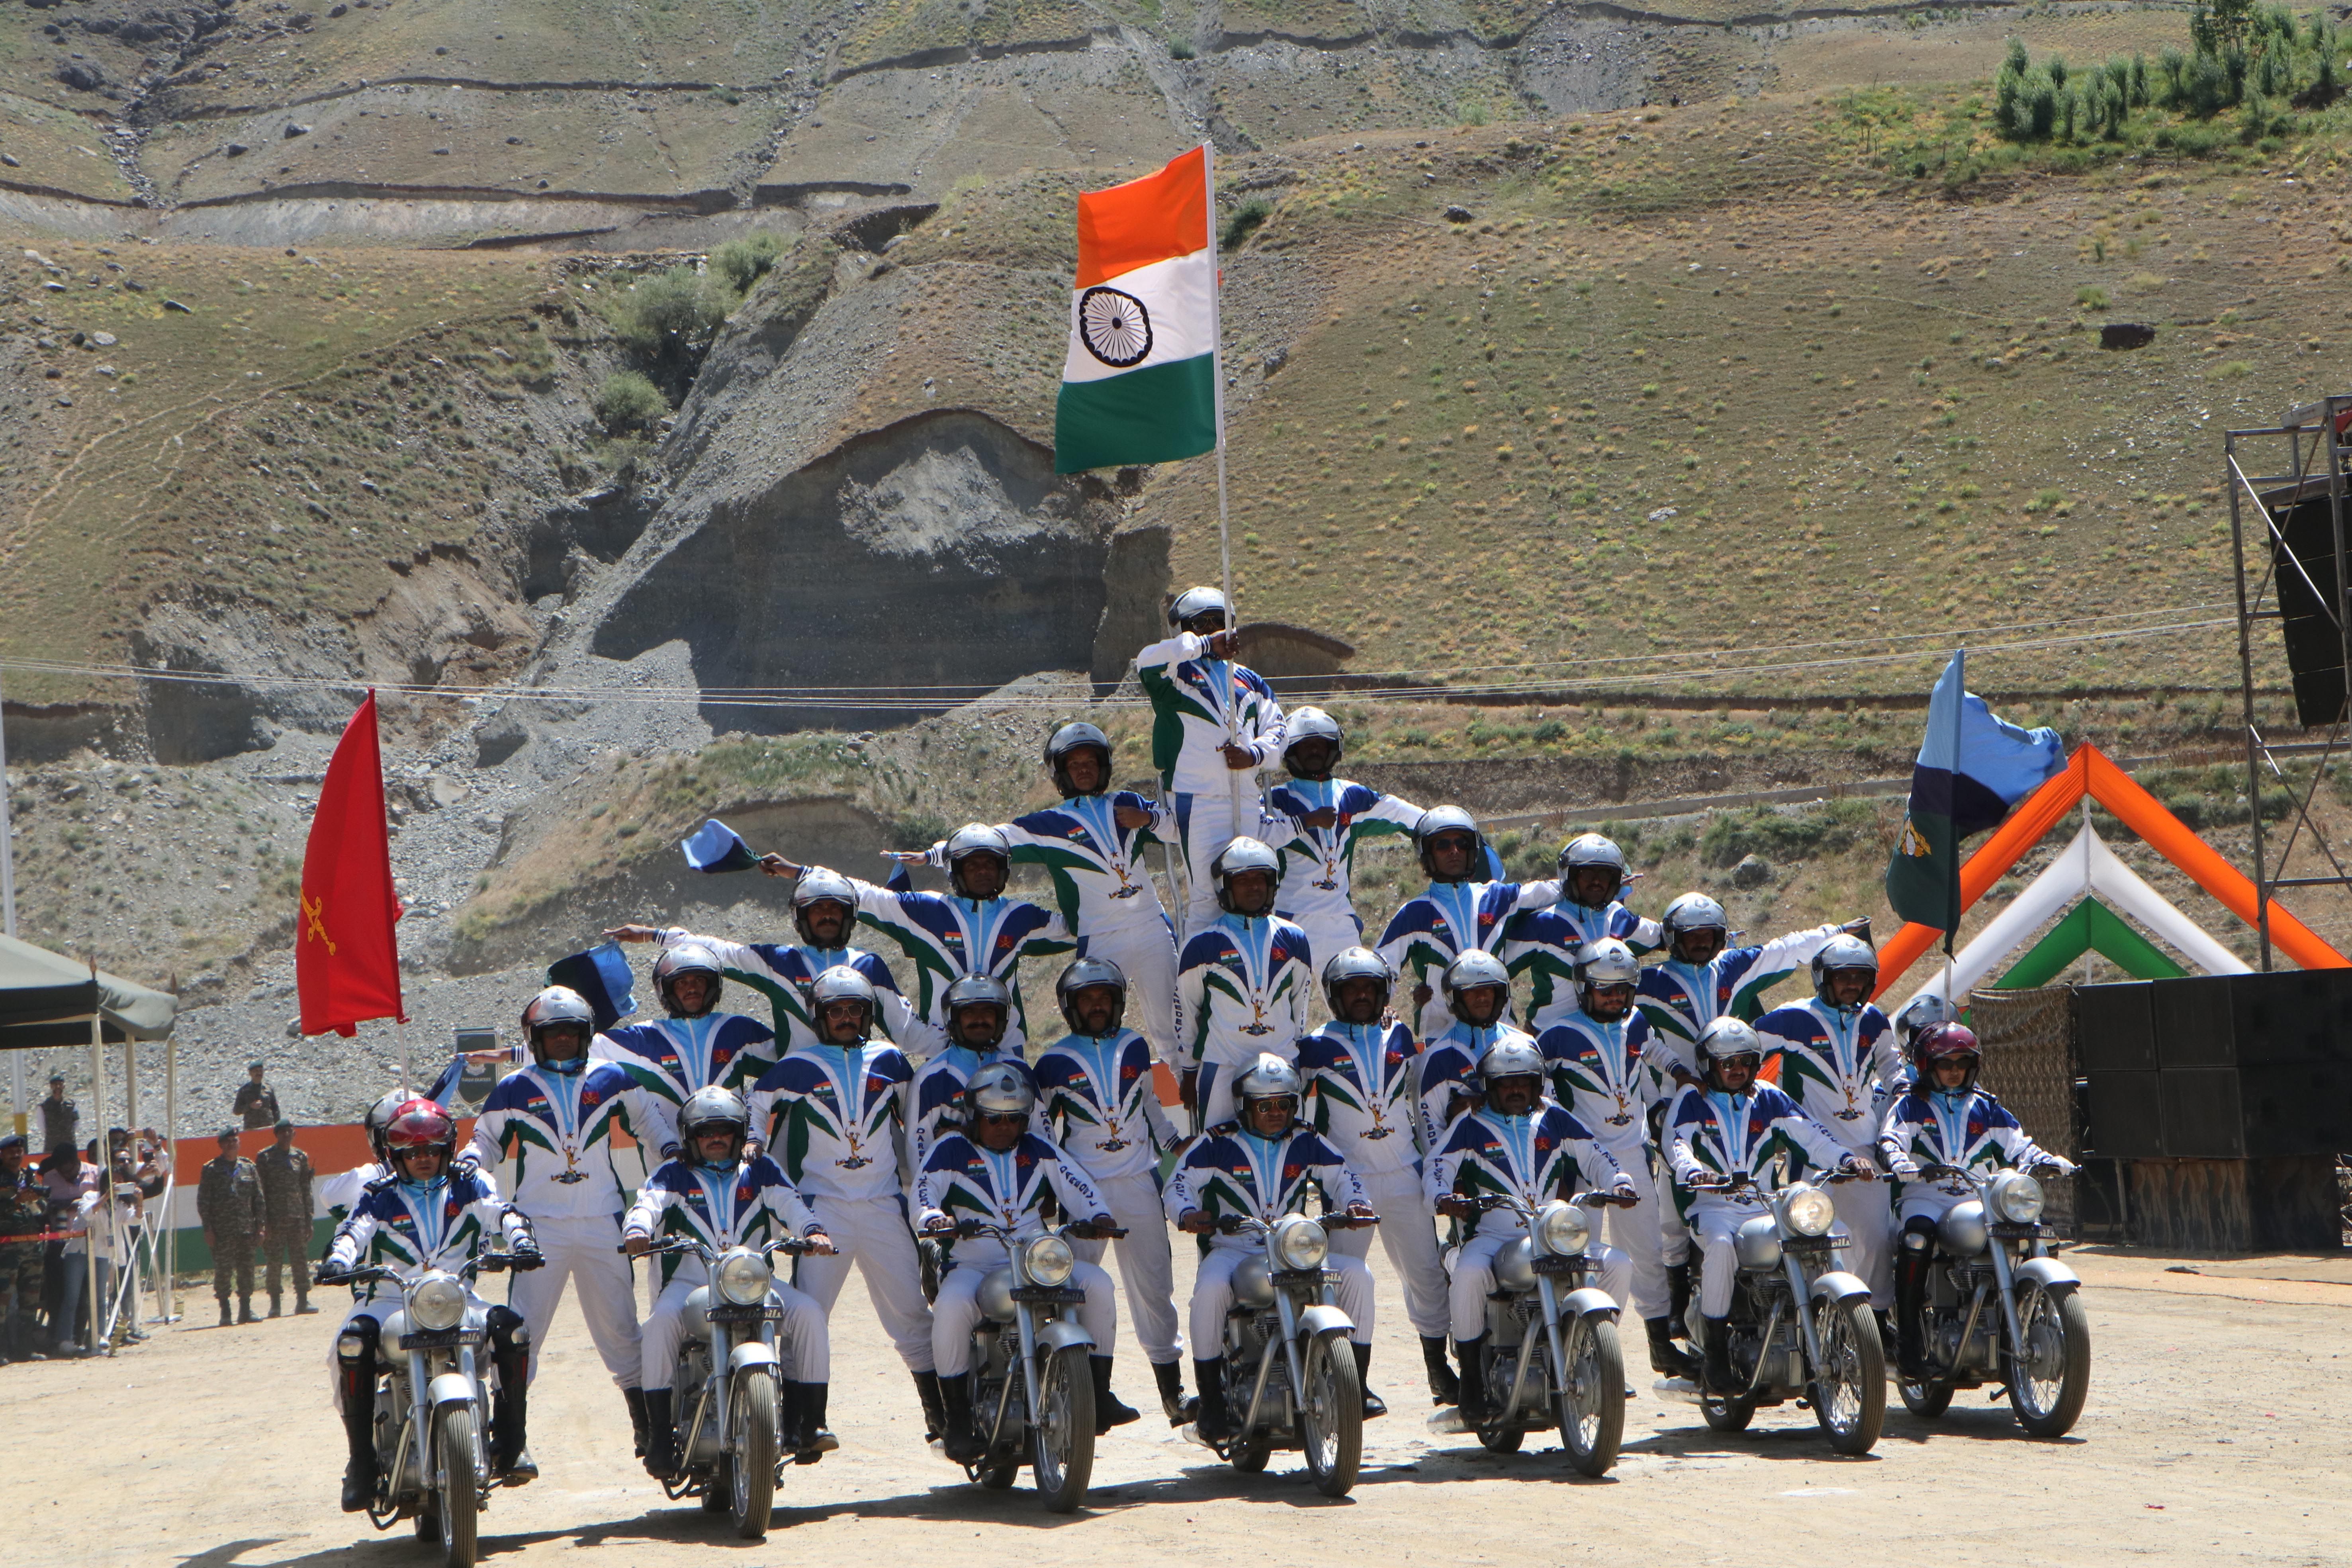 Kargil Vijay Diwas : कारगिल विजय दिवस के स्मृति समारोह में सैनिकों ने दिखाया
करतब